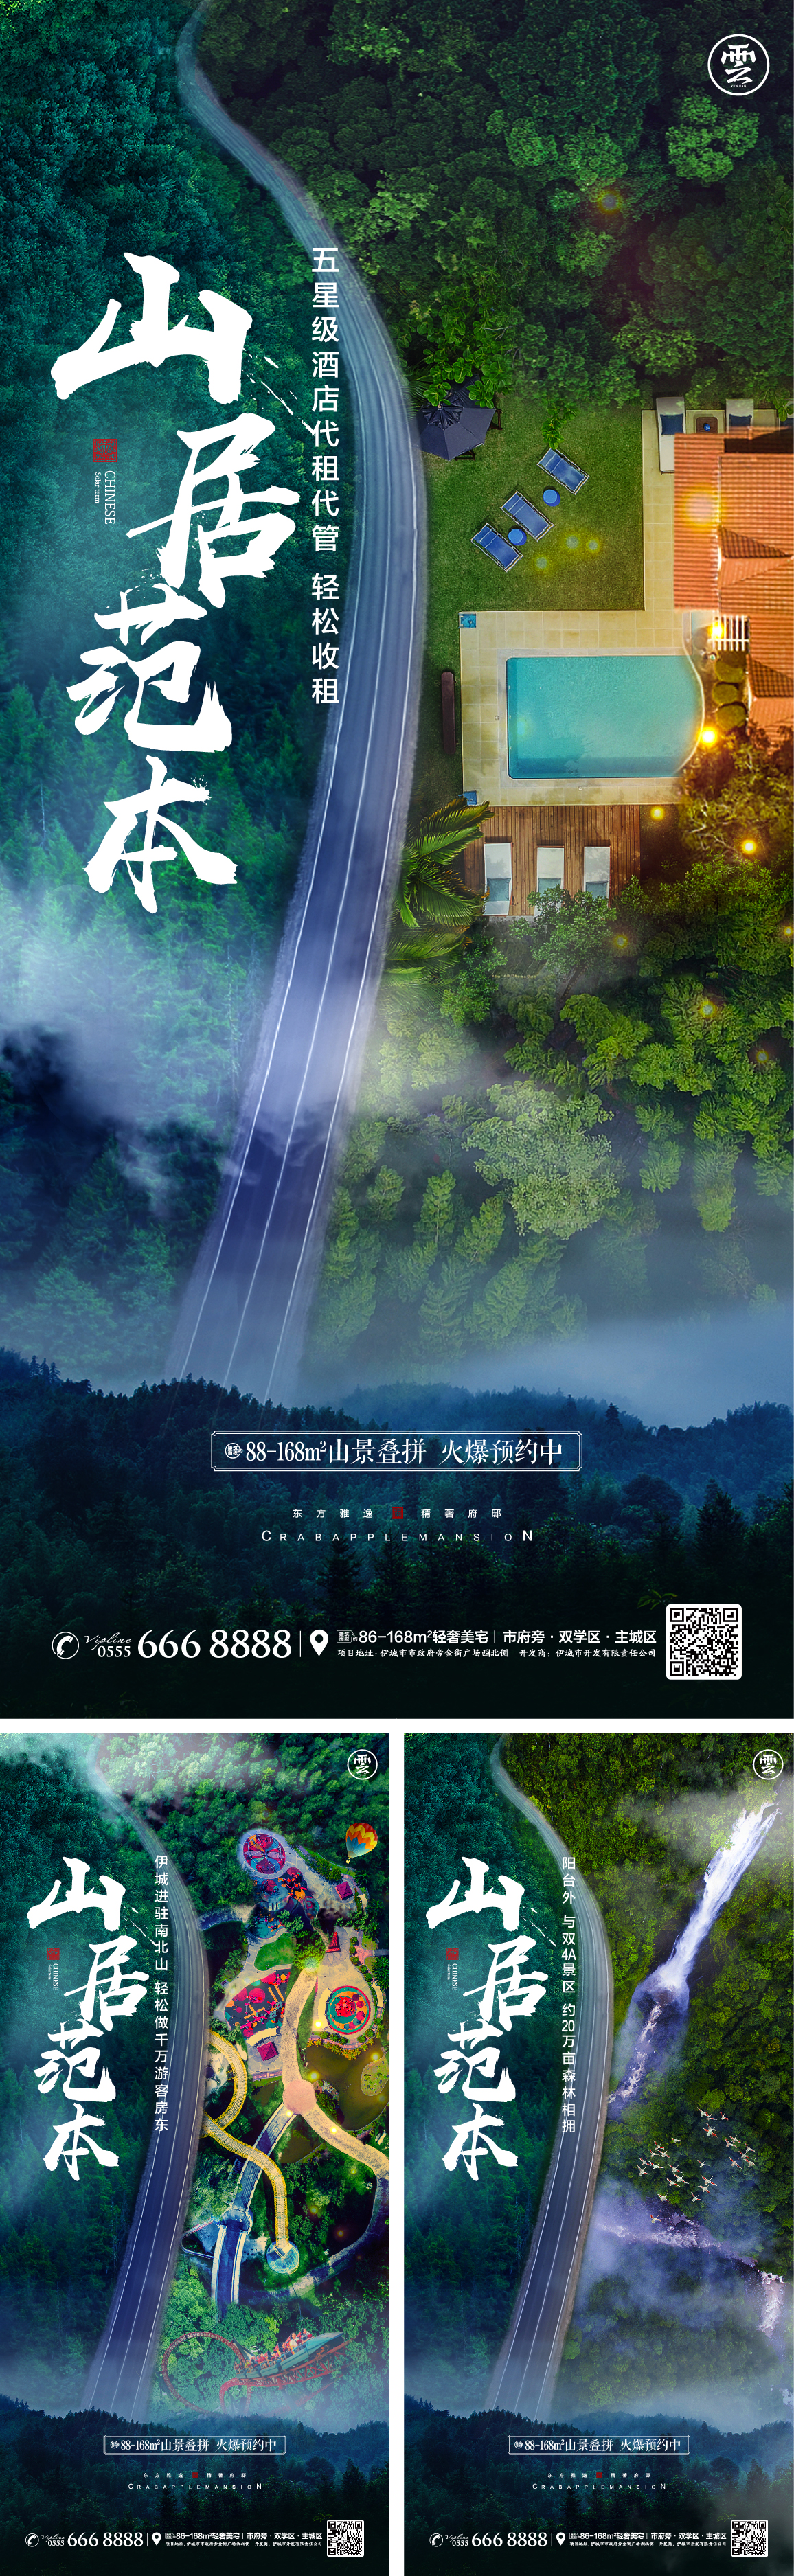 文旅山居森林价值点别墅系列海报PSD+AI广告设计素材海报模板免费下载